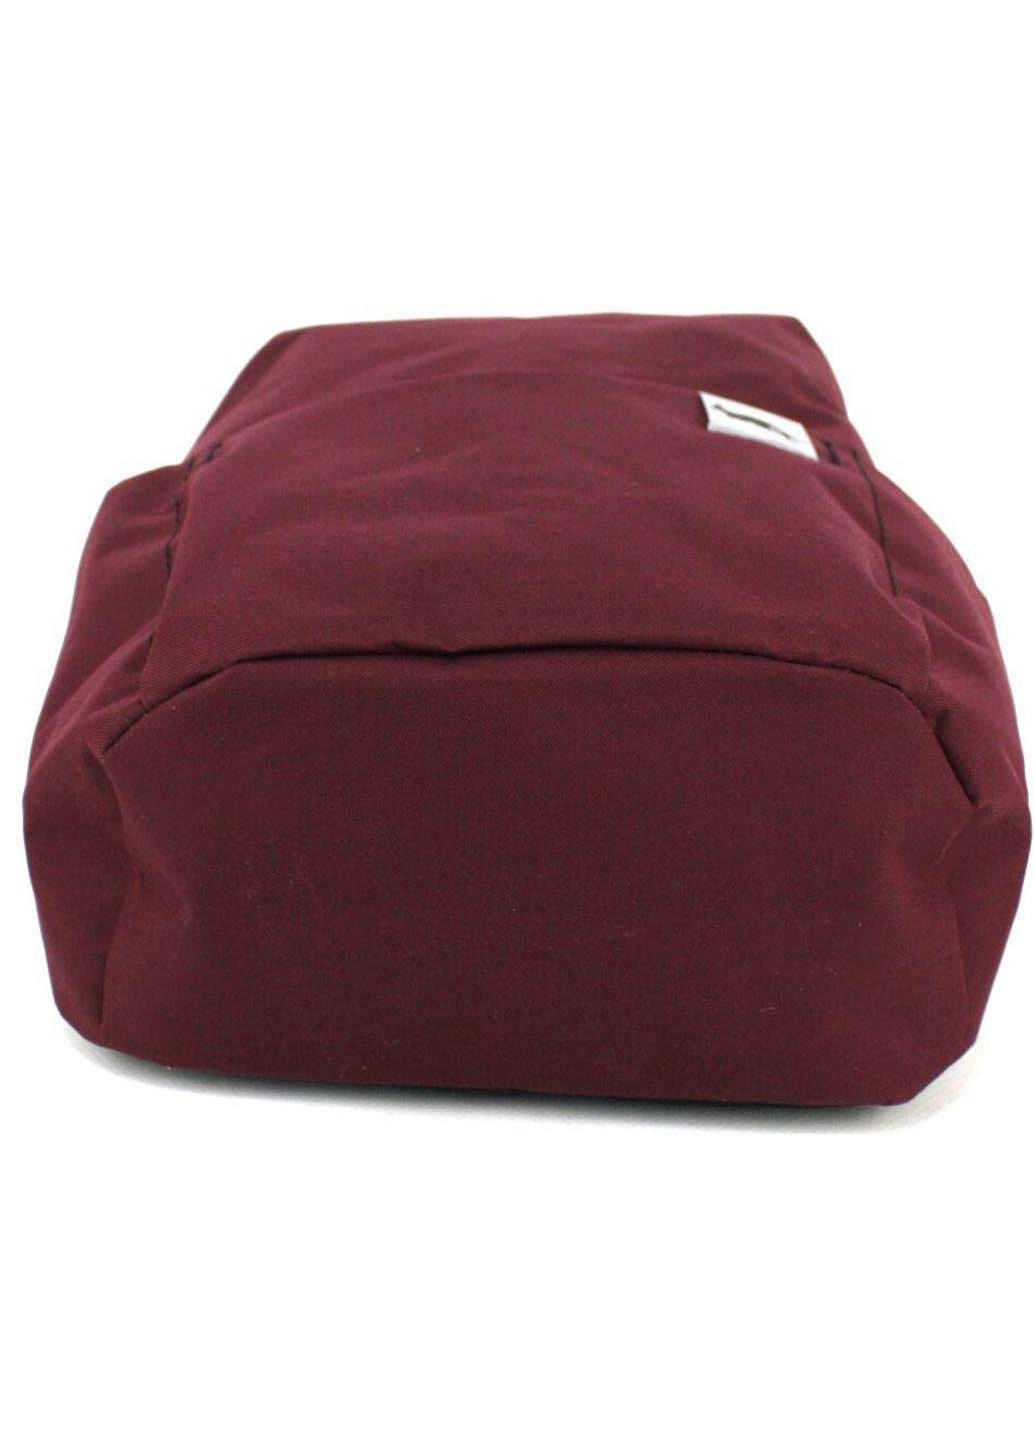 Компактный рюкзак для города 9L Wallaby (291376390)